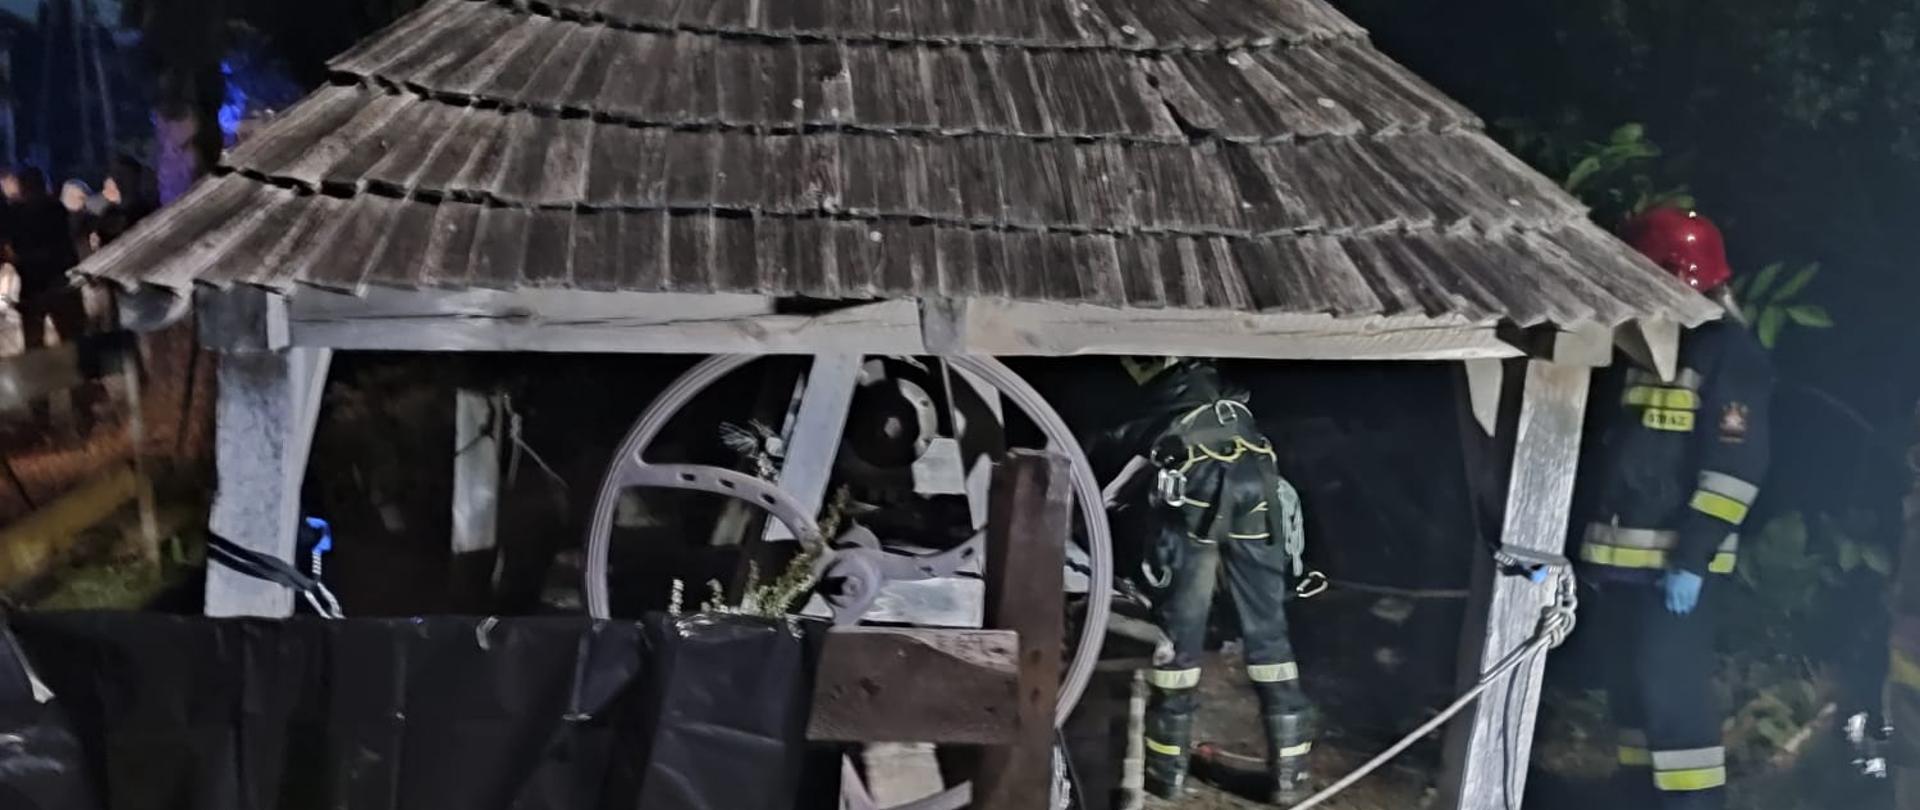 Zdjęcie przedstawia studnię zabezpieczoną drewnianym daszkiem z której ratownicy wydobyli poszkodowanego. Widać dwóch strażaków w czasie prowadzenia akcji.